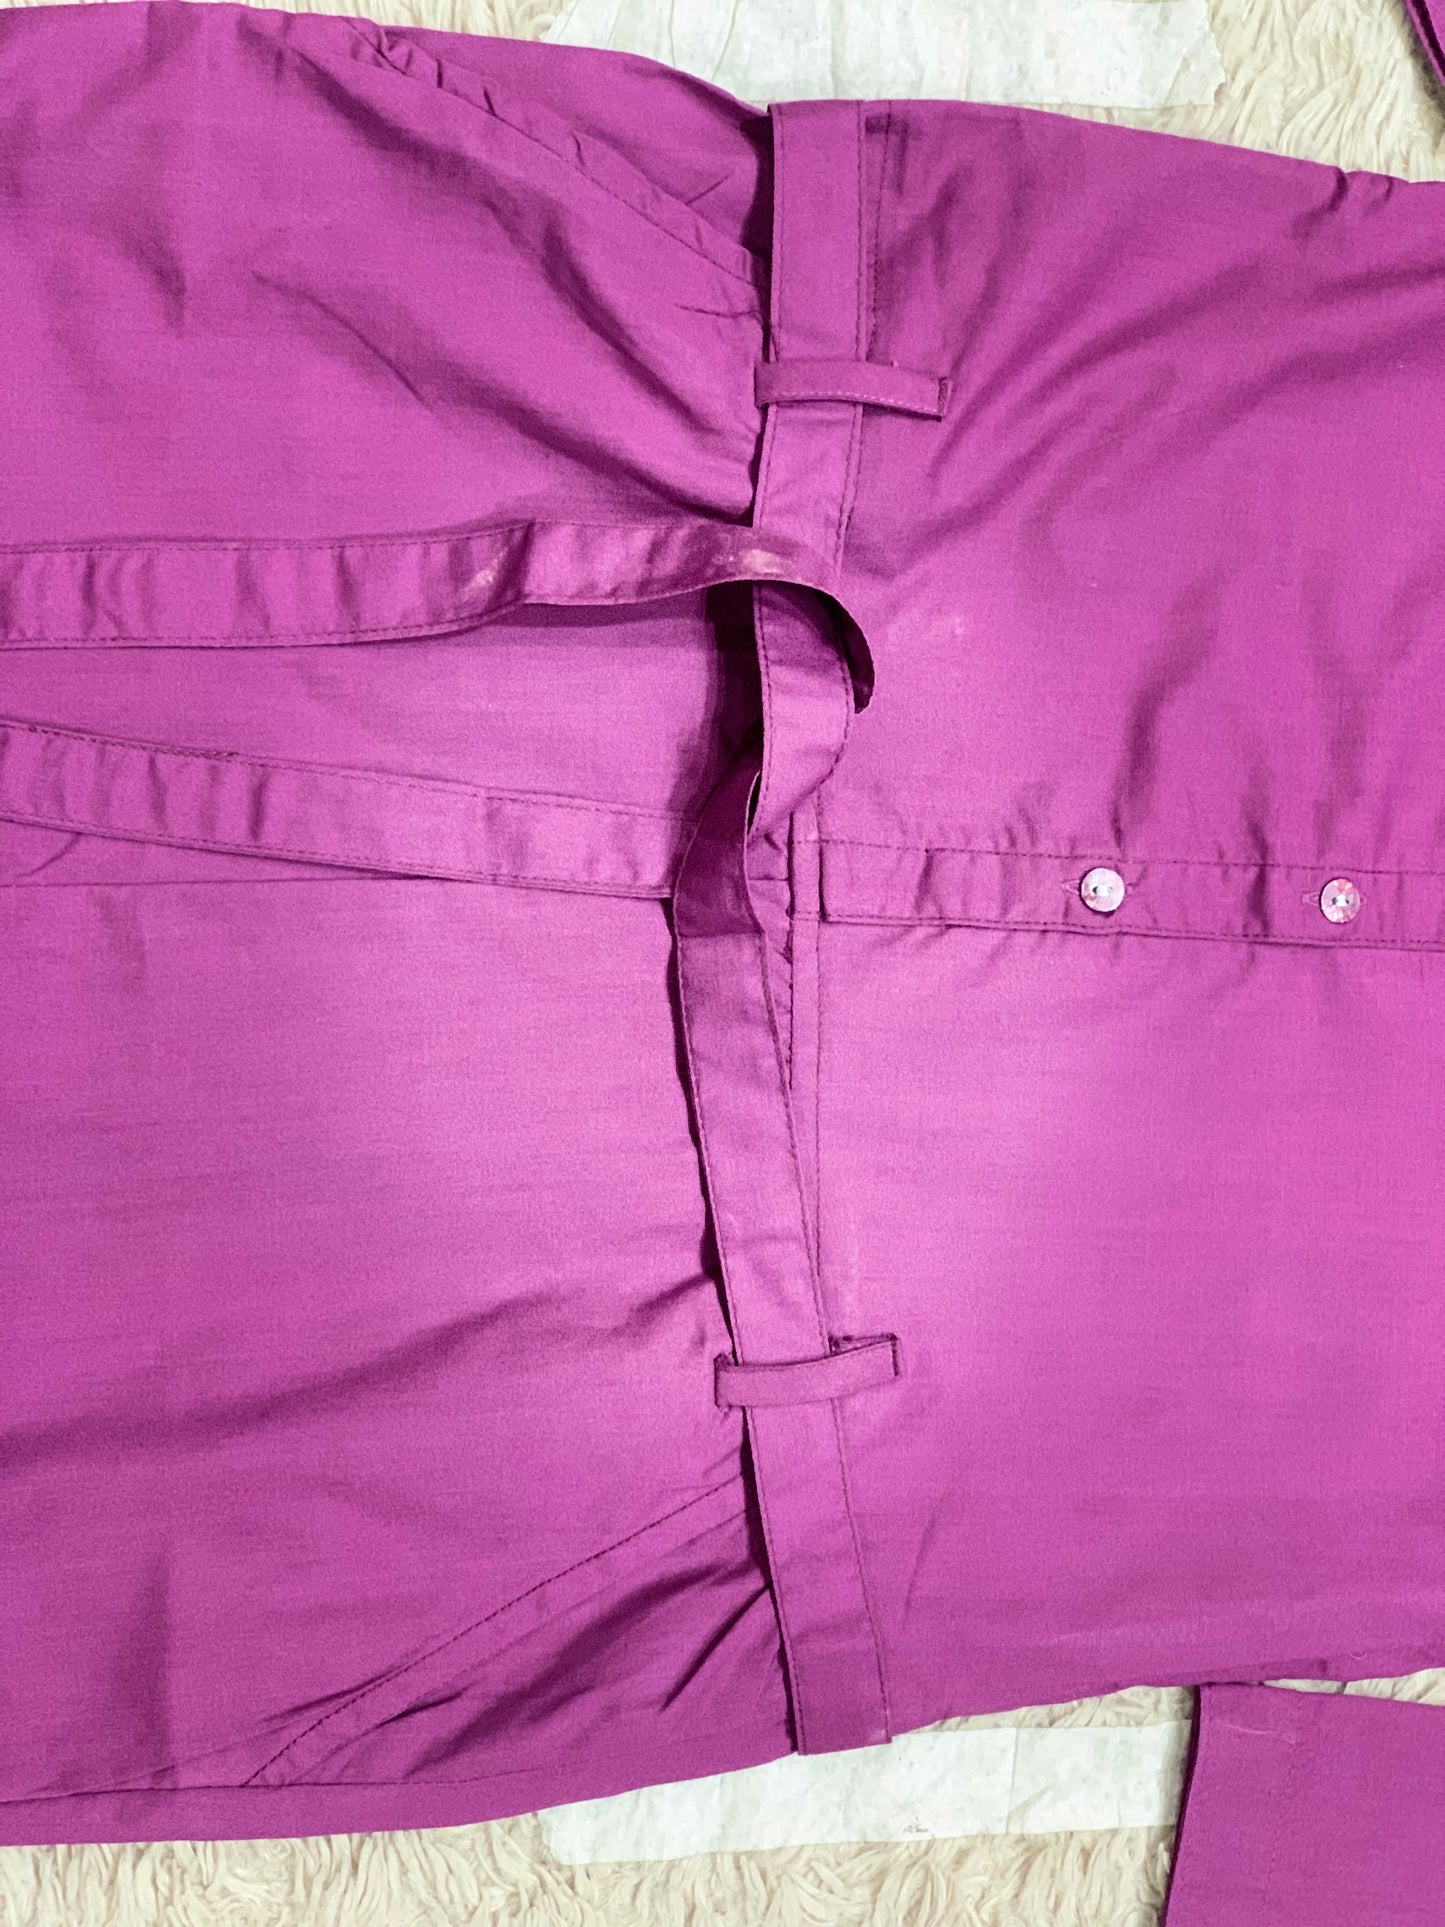 Purple embroided Jumpsuit